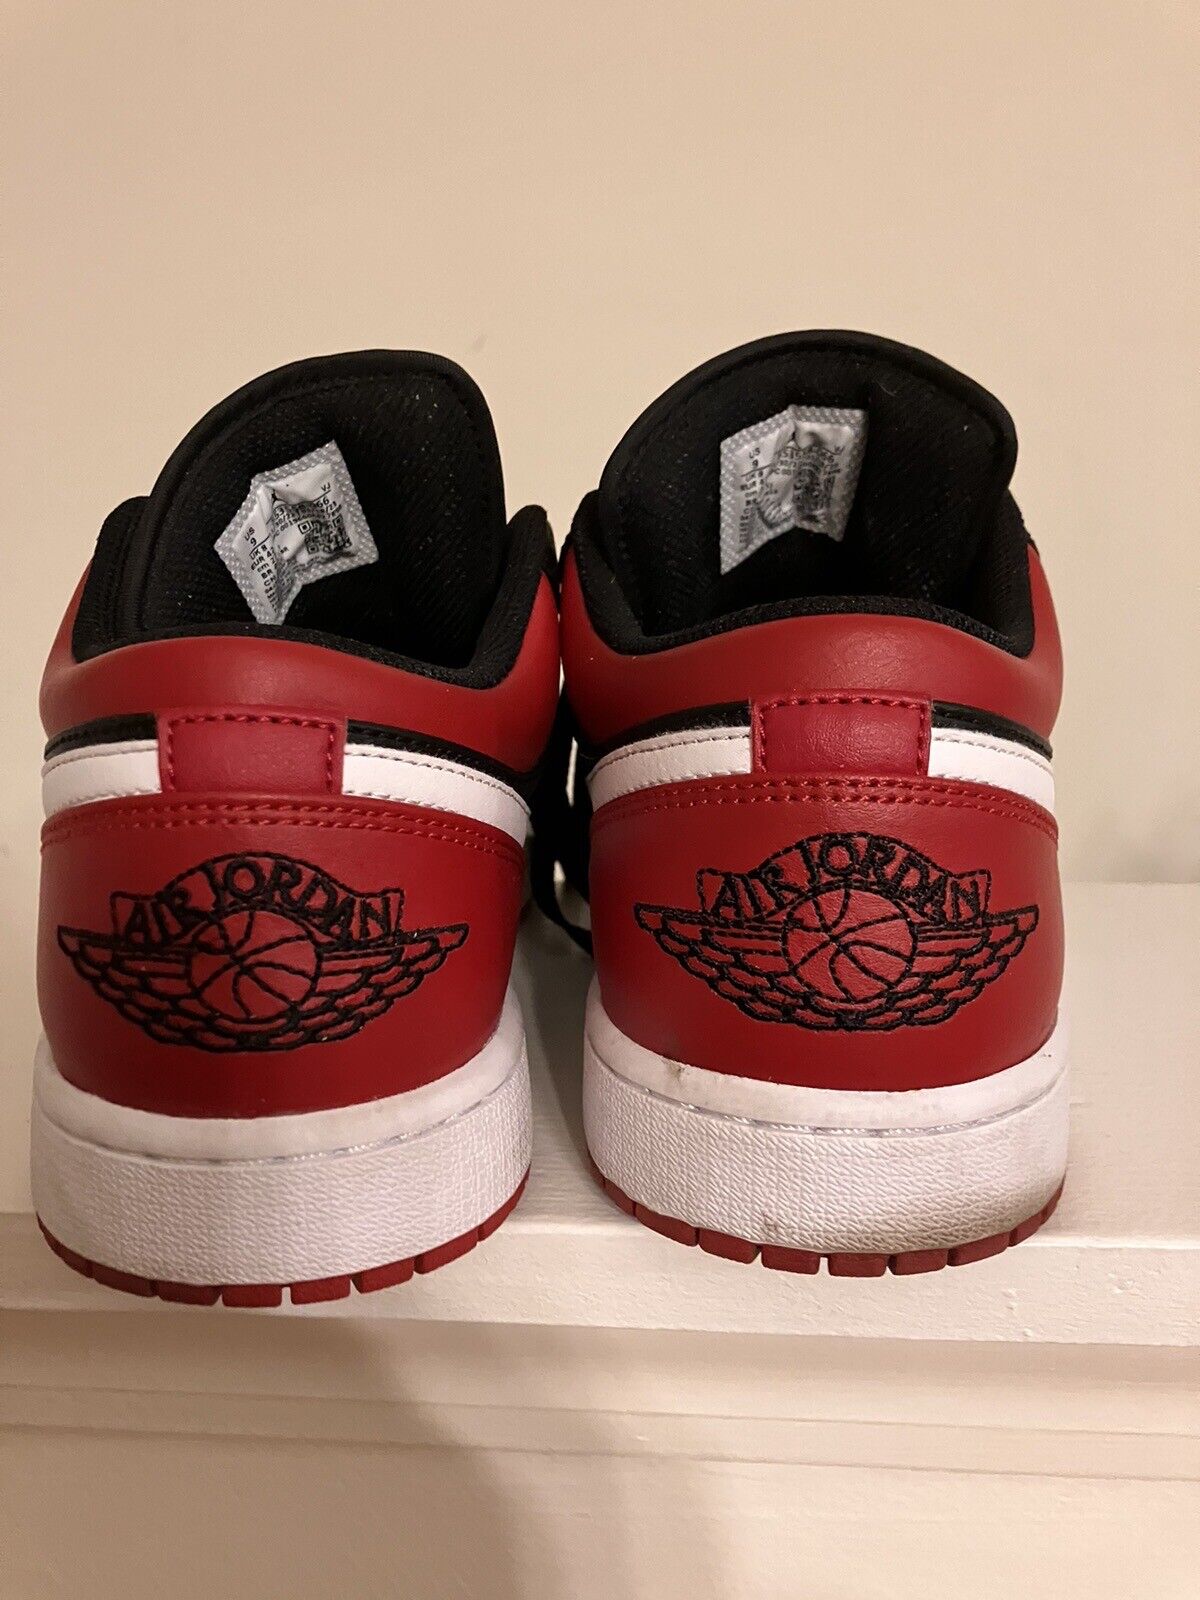 Jordan 1 Retro OG Black Red True Nike Purchase - image 4